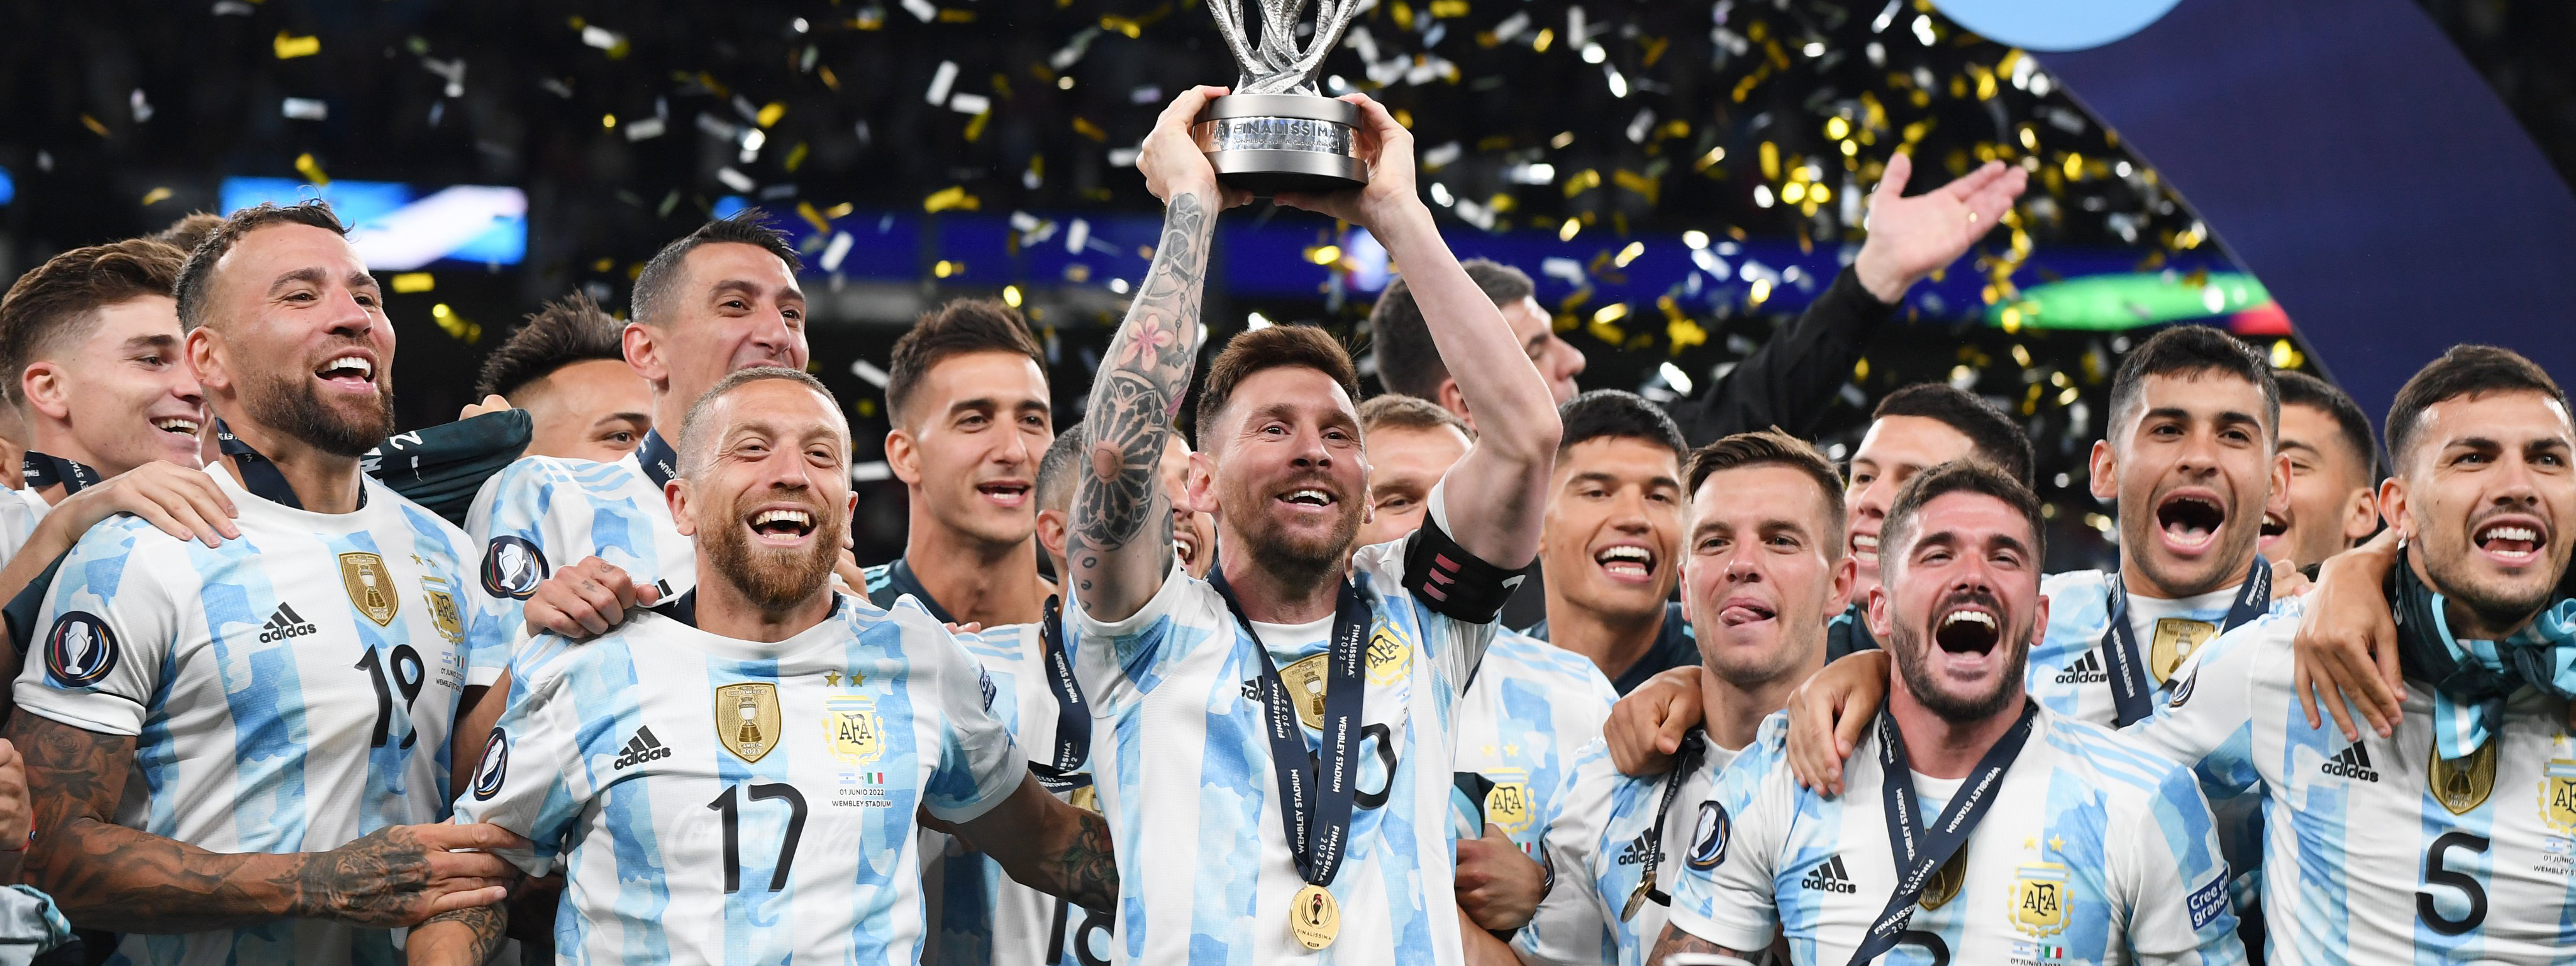 FINALISSIMA: Argentina tuvo una actuación consagratoria, aplastó a Italia en Wembley y se llevó la Copa